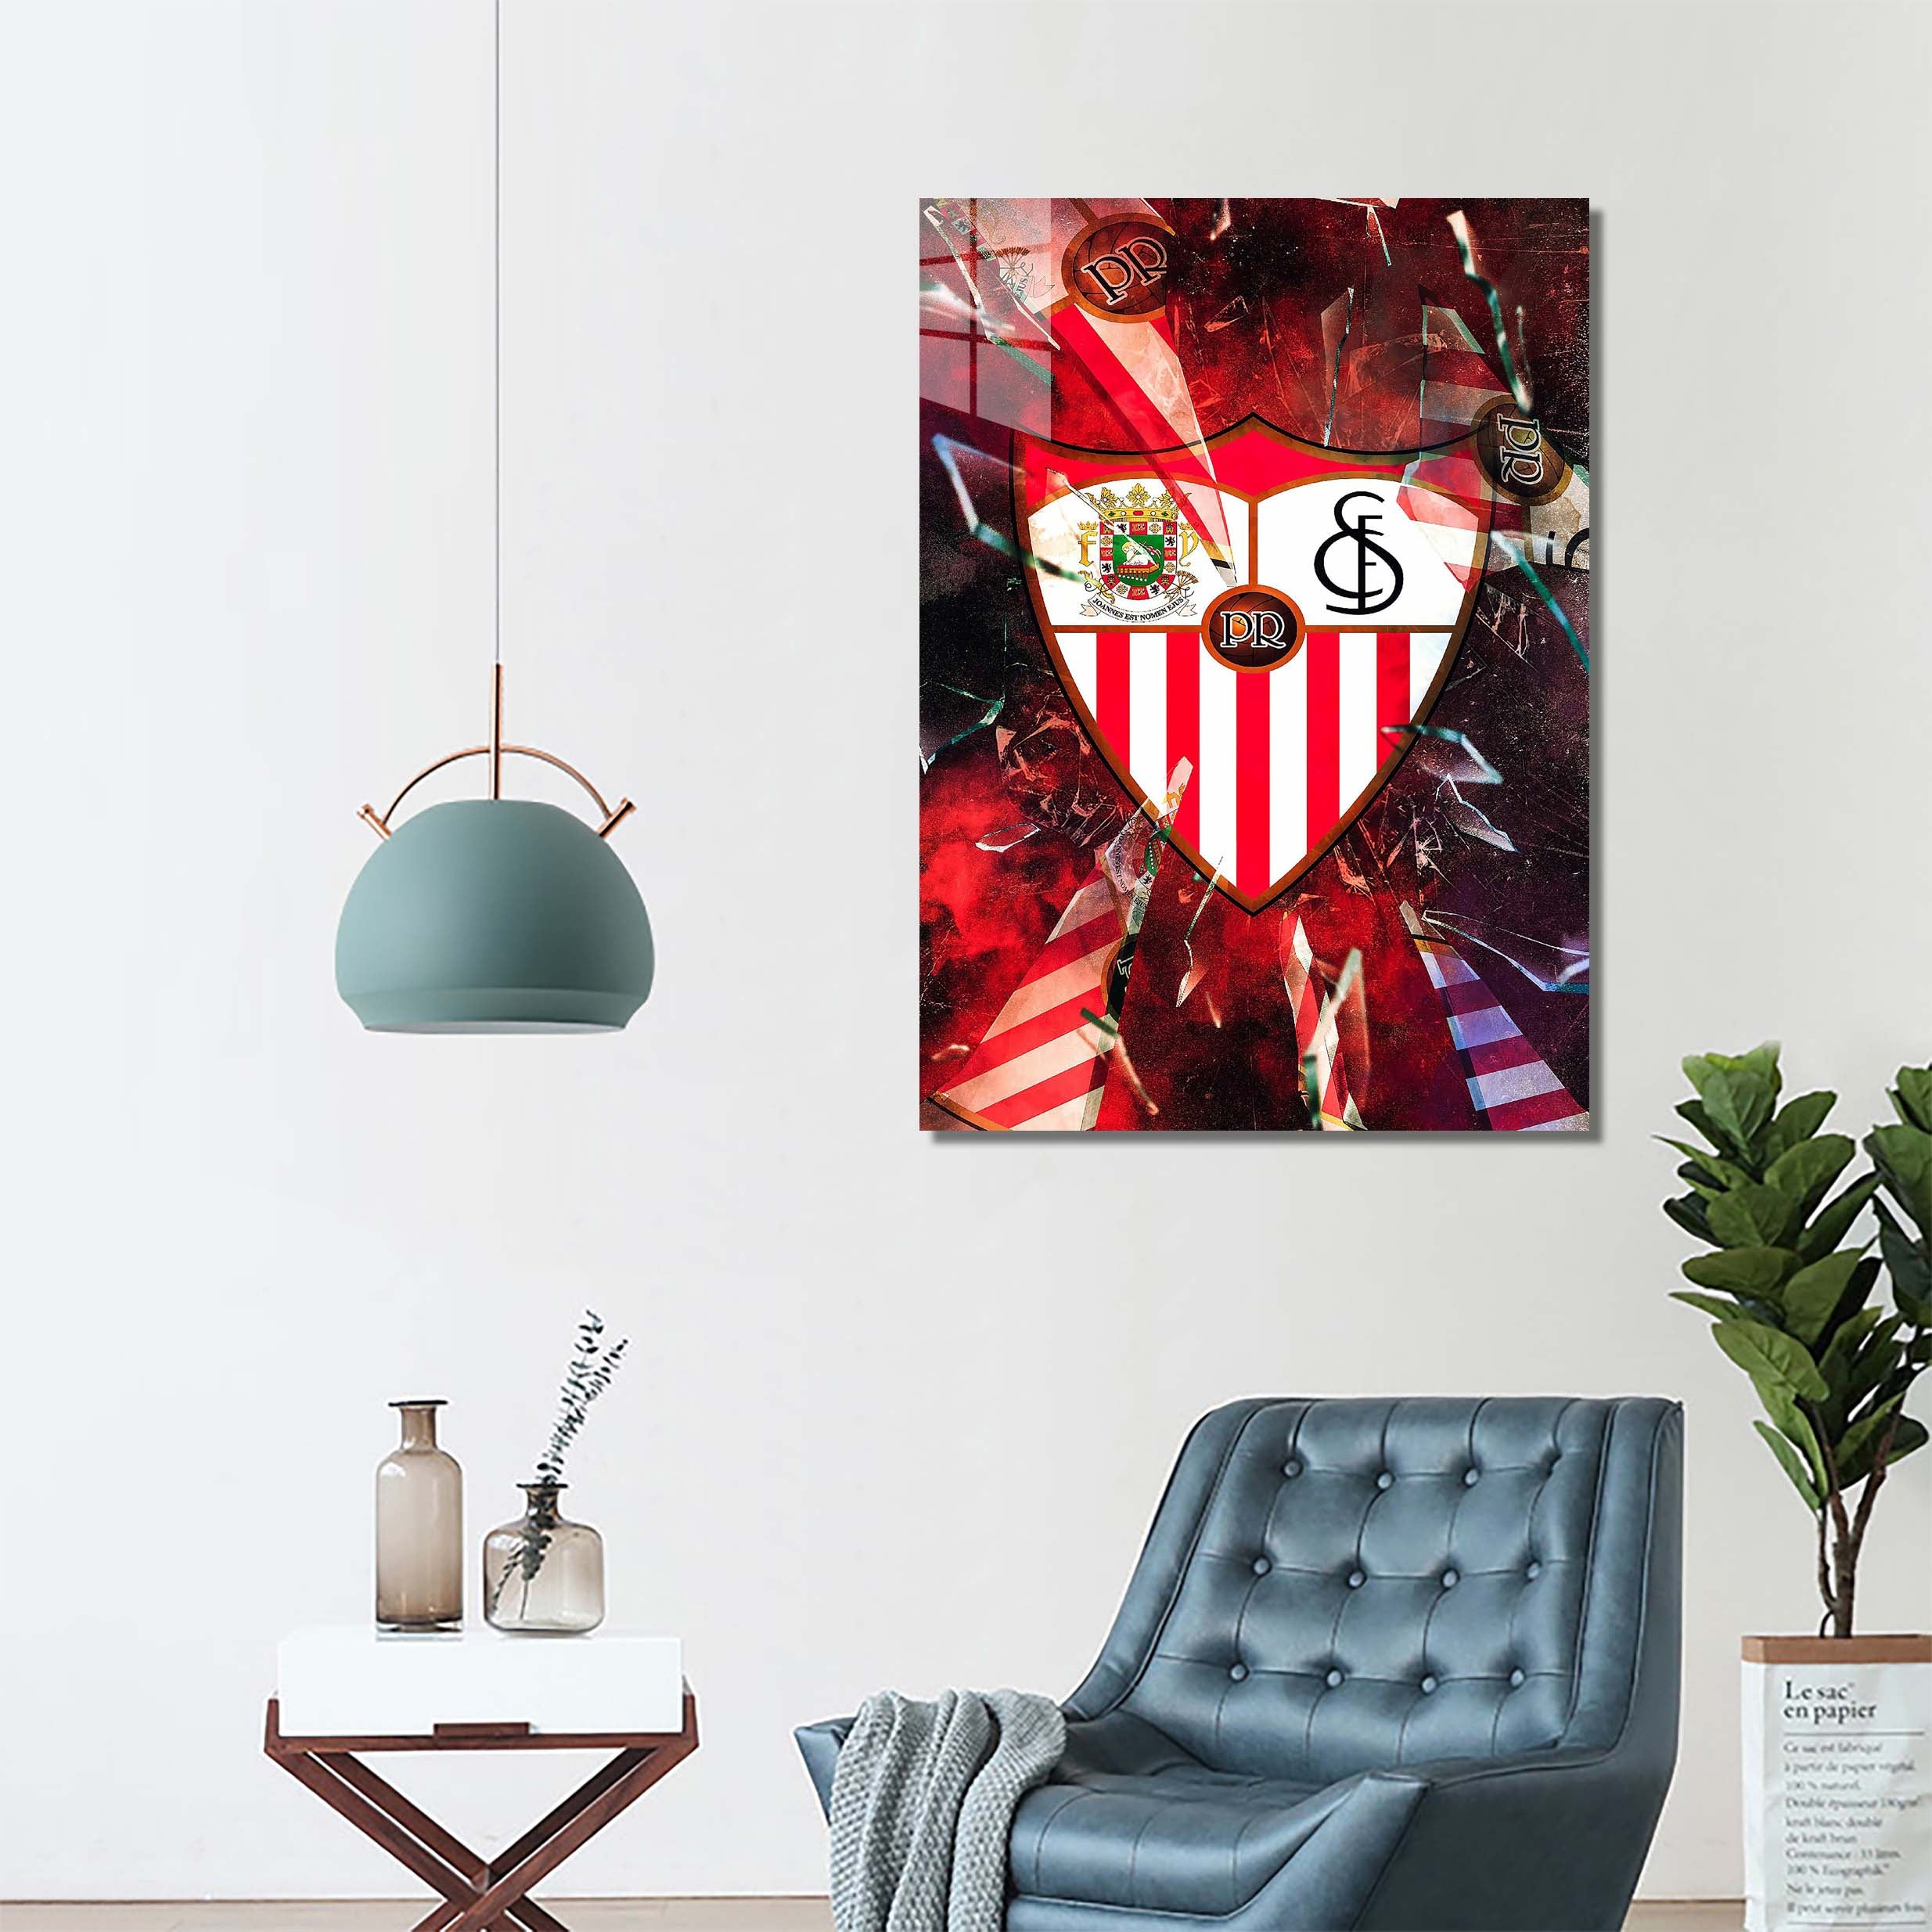 Sevilla-designed by @Hoang Van Thuan